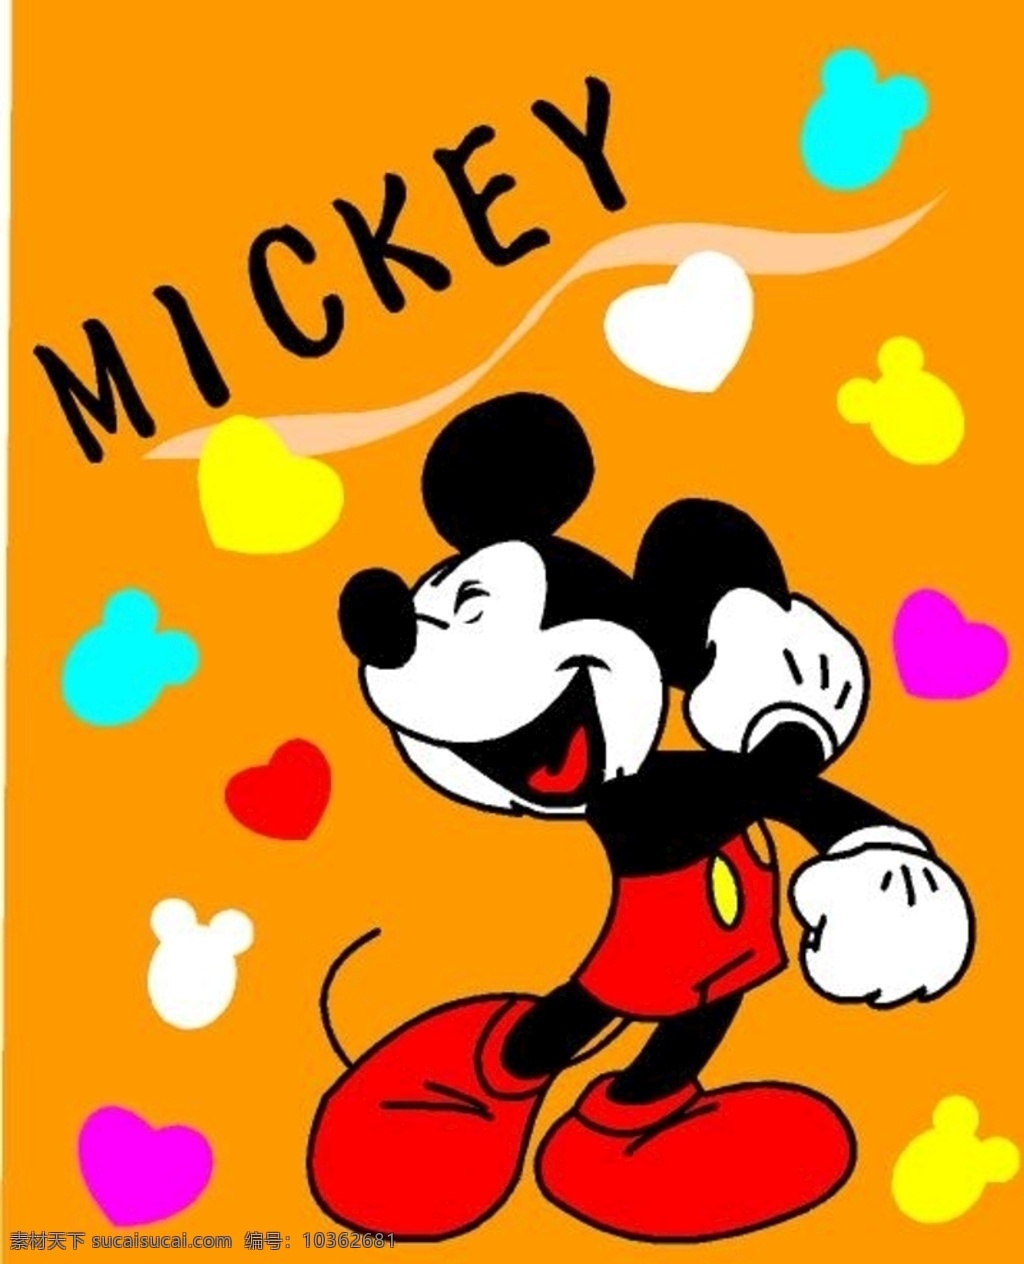 米老鼠矢量图 快乐的米老鼠 米老鼠卡通 米老鼠素材 爱心米老鼠 可爱的米老鼠 米老鼠动漫 动漫动画 动漫人物